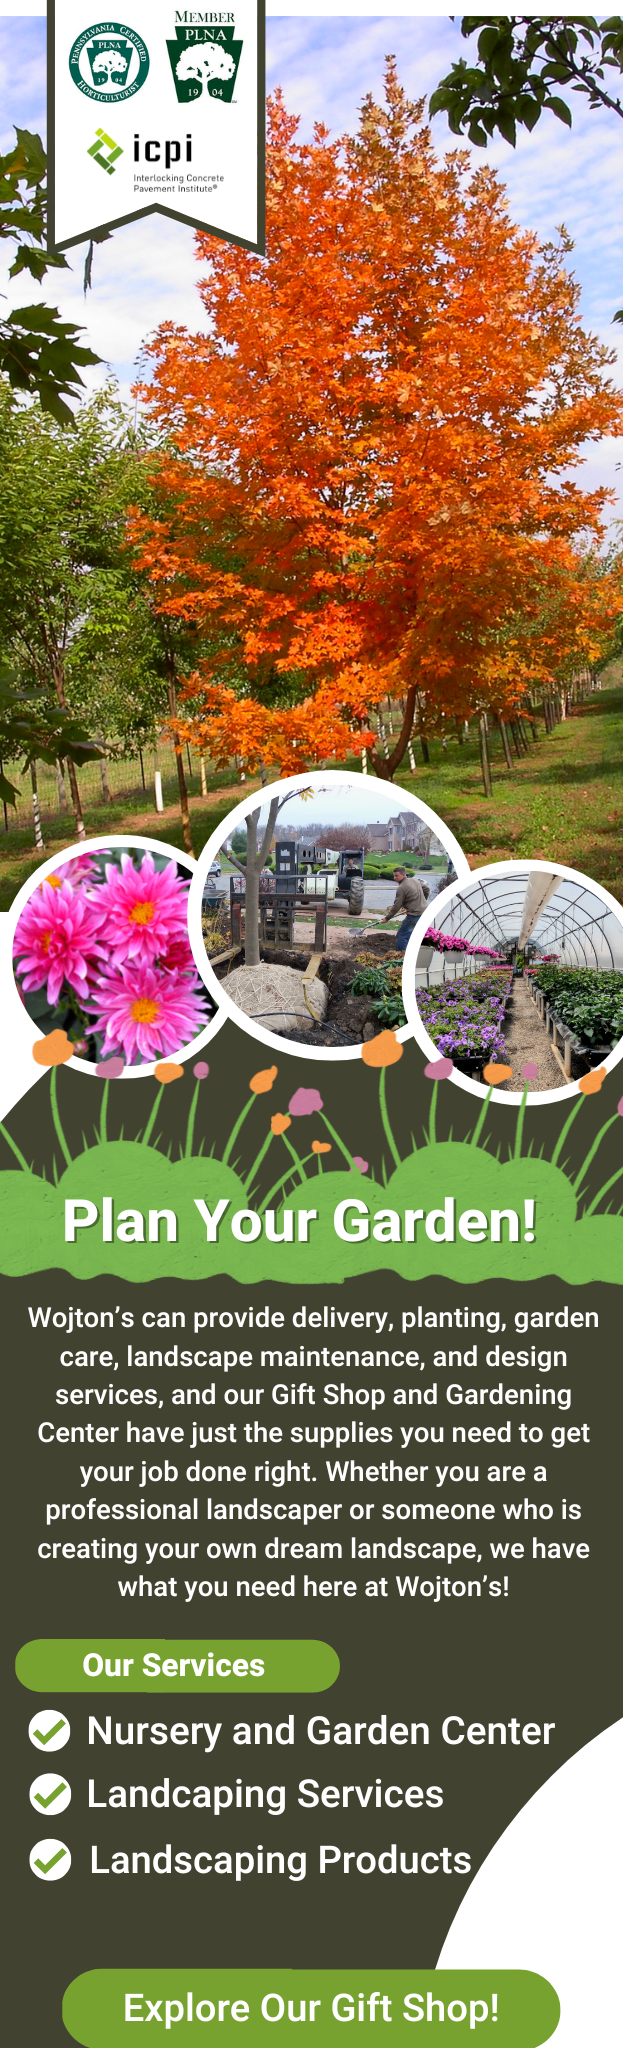 Plan Your Garden! 1